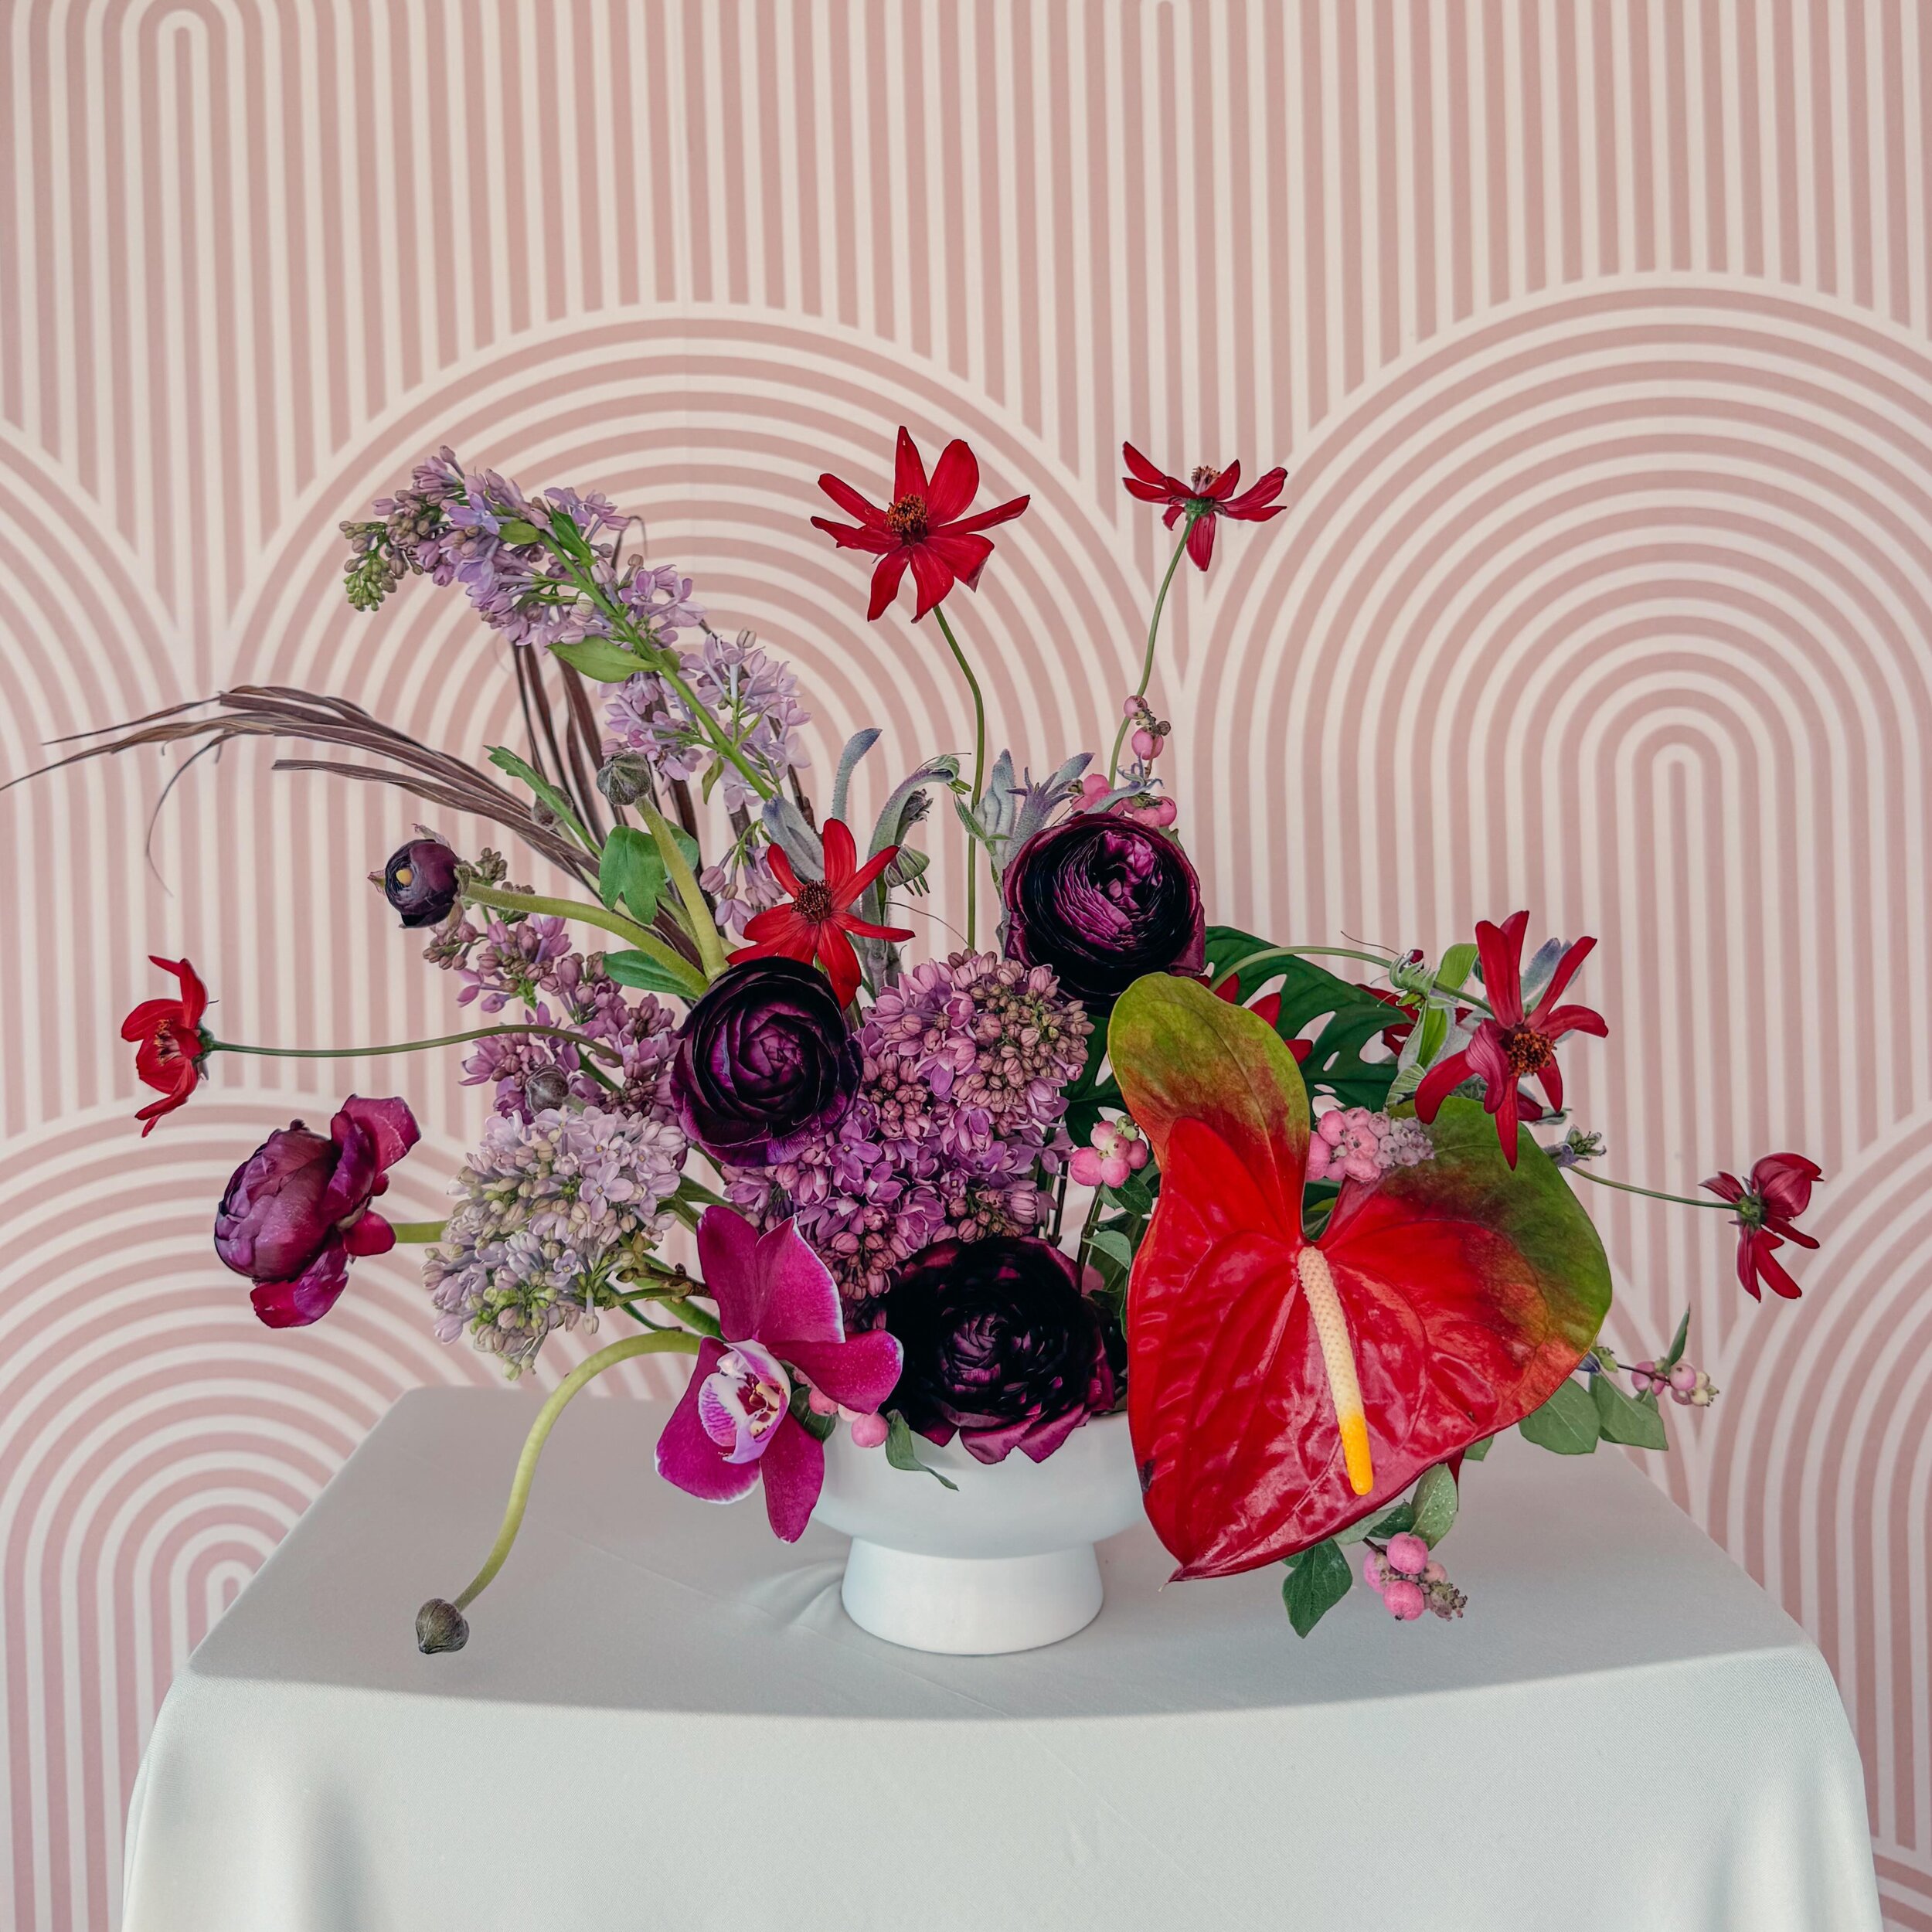 Color Goals ❤️&zwj;🔥

.
.
#floraldesign #detroitflorist #weddingflowers #gothicflower #pinfrogarrangement #tropicaldesign #michiganflorist #weddingplanning